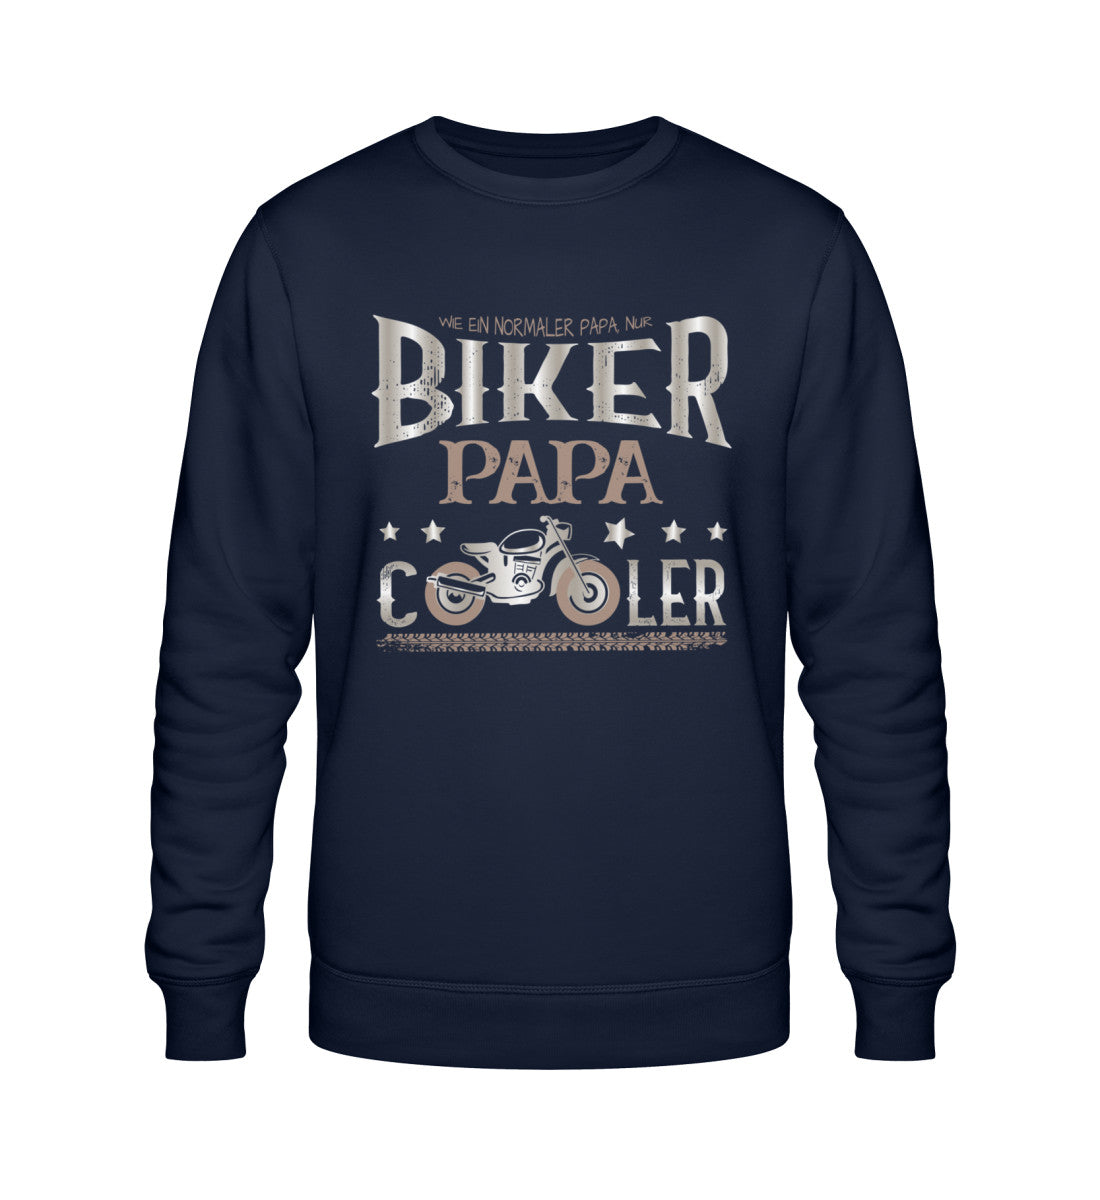 Ein Biker Sweatshirt für Motorradfahrer von Wingbikers mit dem Aufdruck, Biker Papa - Wie ein normaler Papa nur cooler - in navy blau.